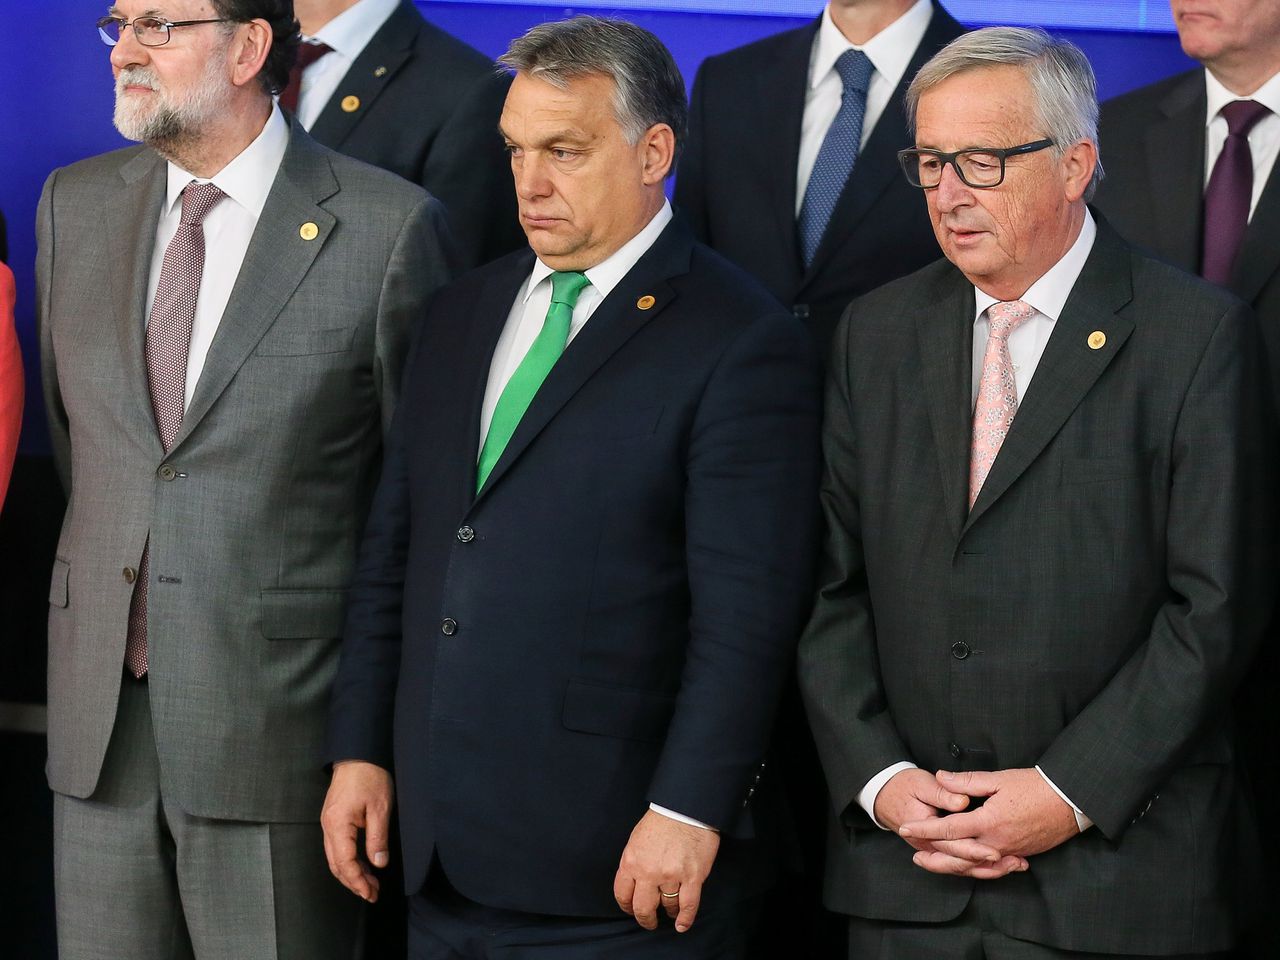 De Hongaarse premier Viktor Orbán (midden) tijdens een Europese top in Brussel in december 2017, geflankeerd door Commissievoorzitter Jean-Claude Juncker (rechts) en de Spaanse premier Mariano Rajoy.